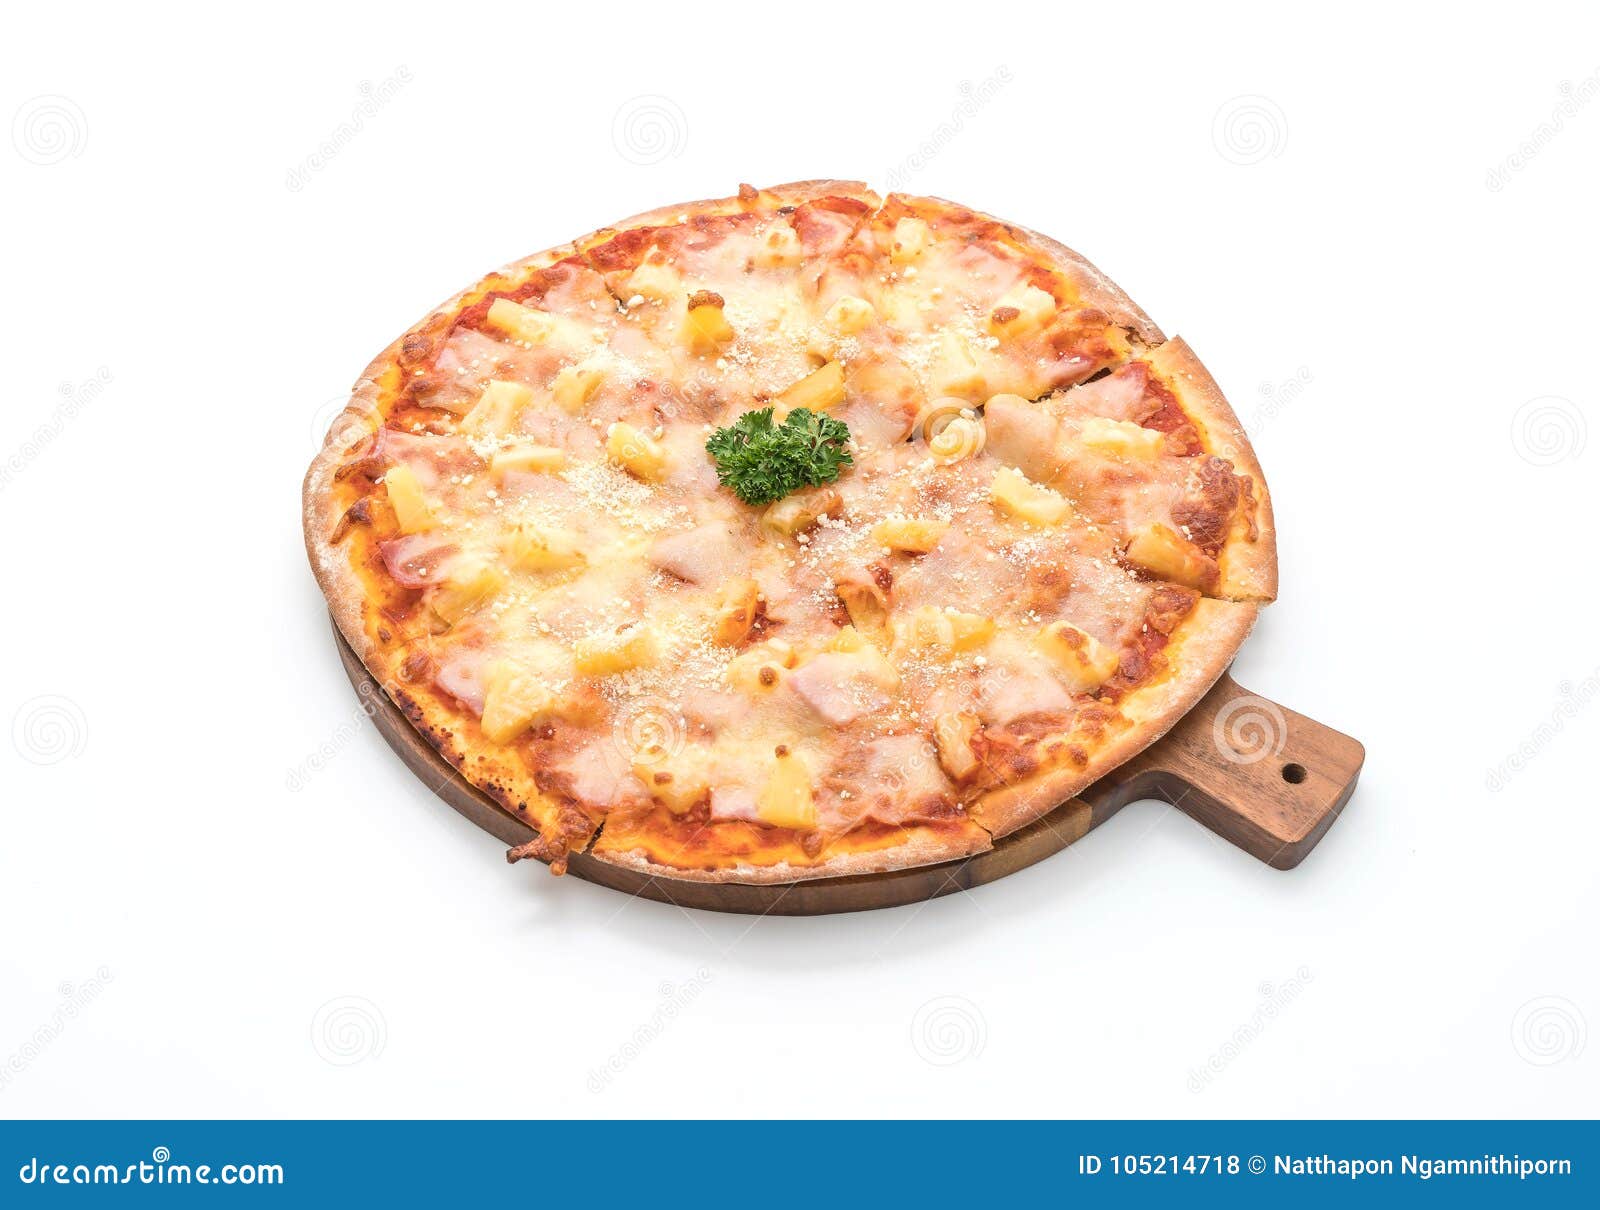 пицца гавайская на белом фоне фото 84